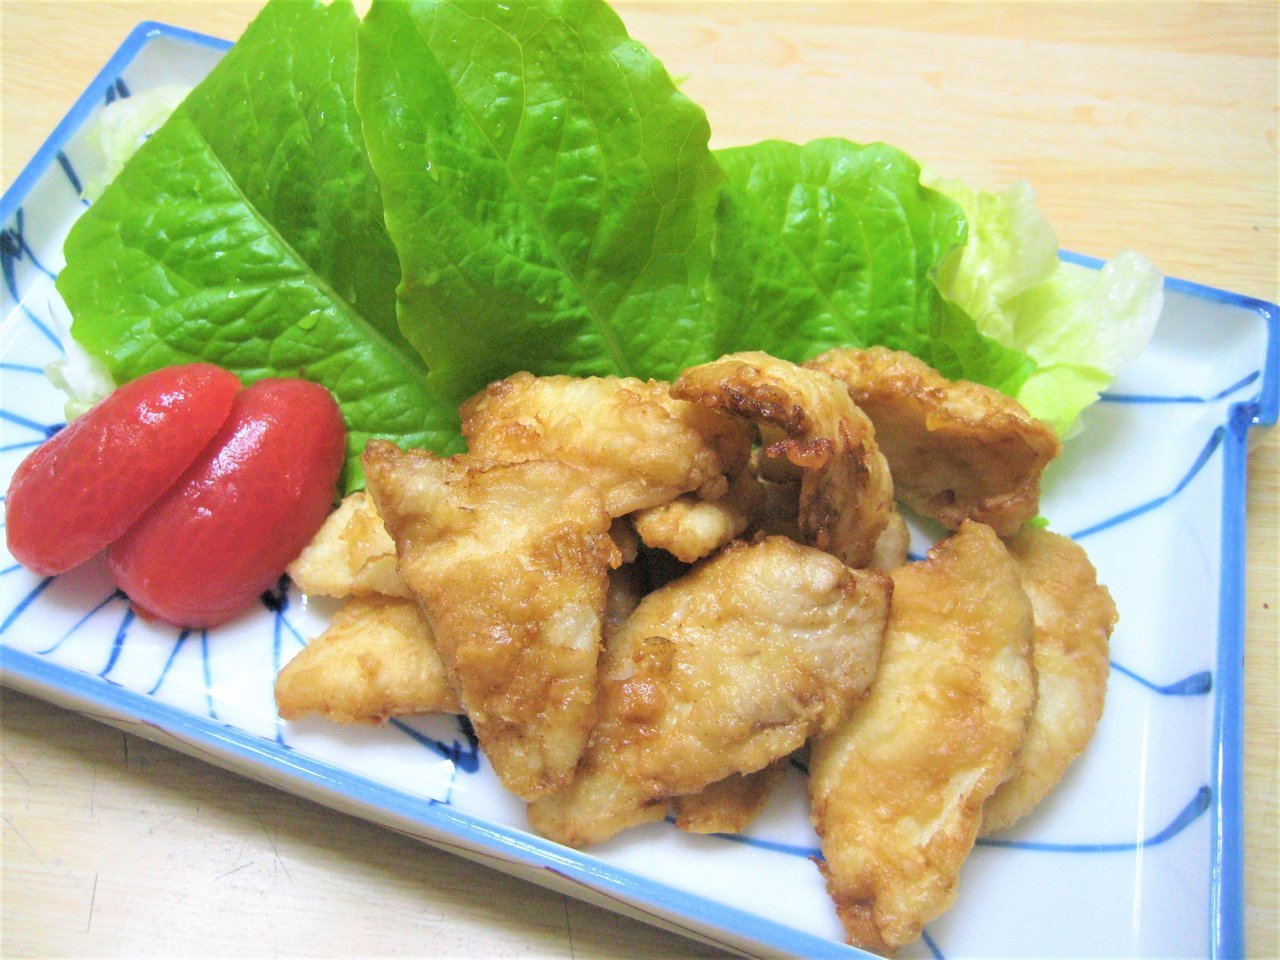 ウマズラハギを釣ったら美味しく食べよう レシピとさばき方 Sotoshiru ソトシル